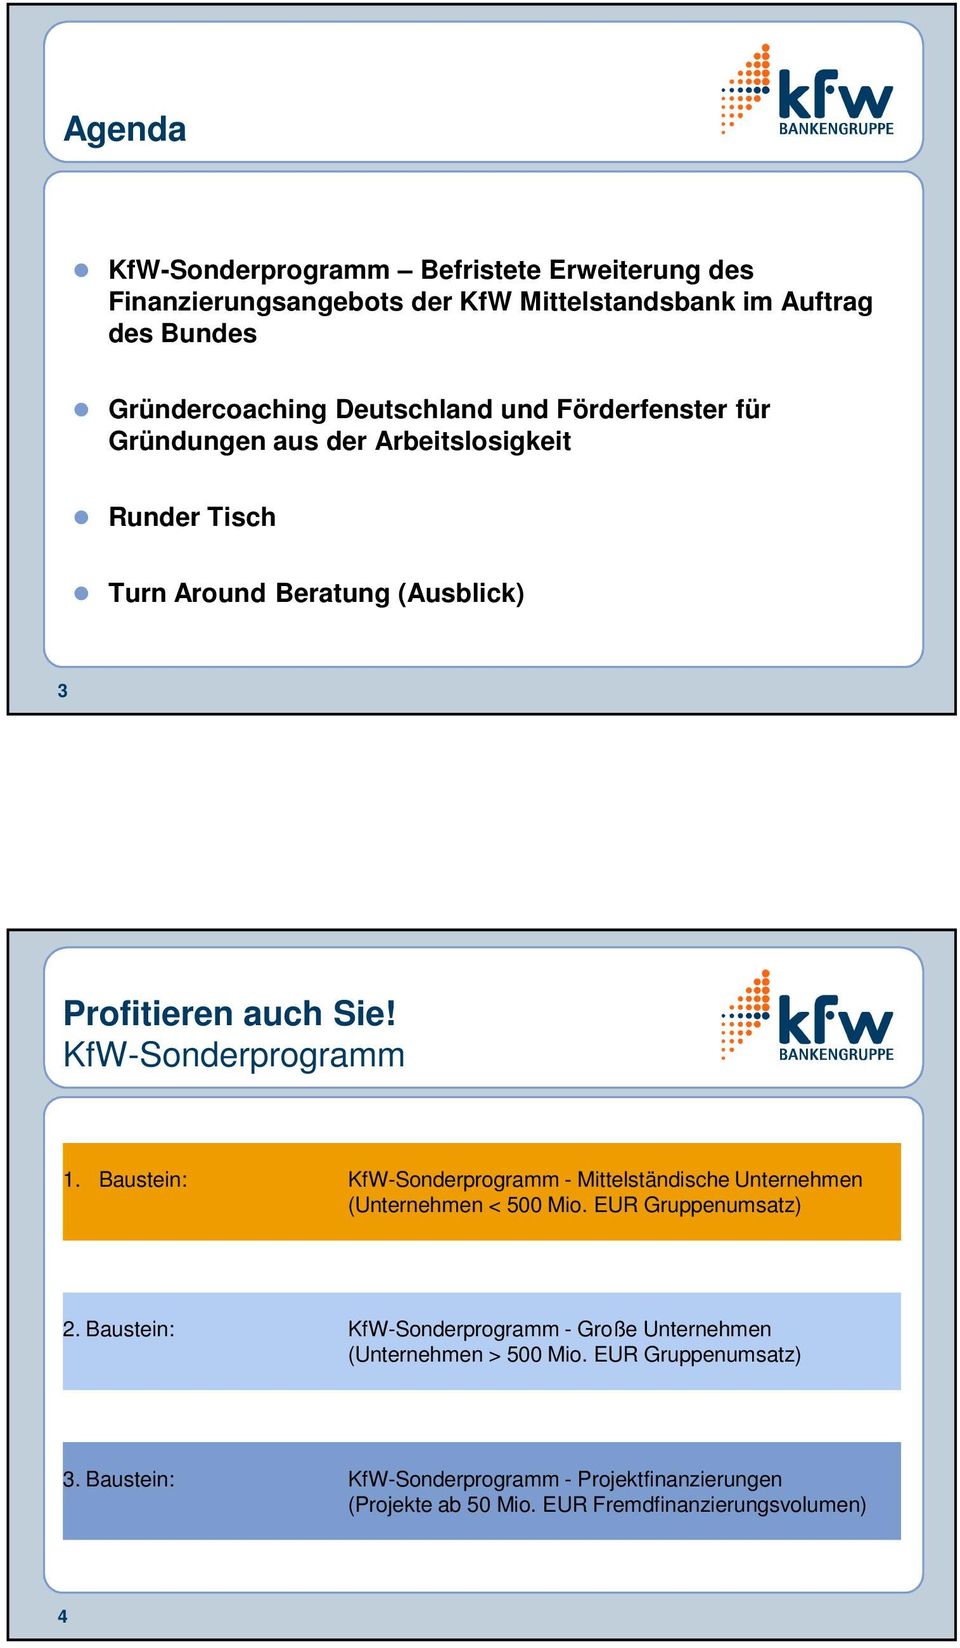 Baustein: KfW-Sonderprogramm - Mittelständische Unternehmen (Unternehmen < 500 Mio. EUR Gruppenumsatz) 2.